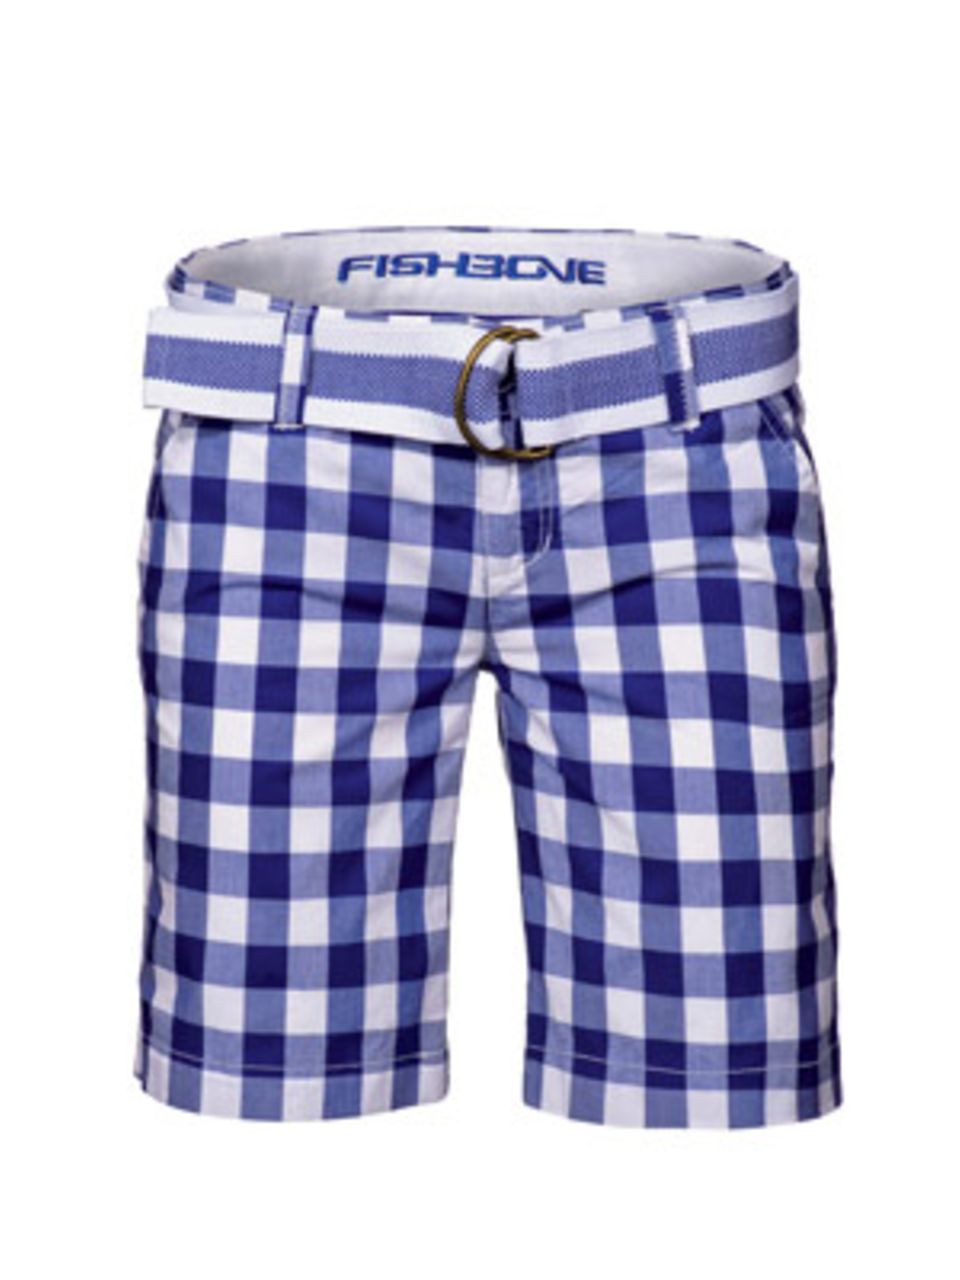 Karierte Shorts mit Gürtel in Blau-Weiß von New Yorker, um 20 Euro.